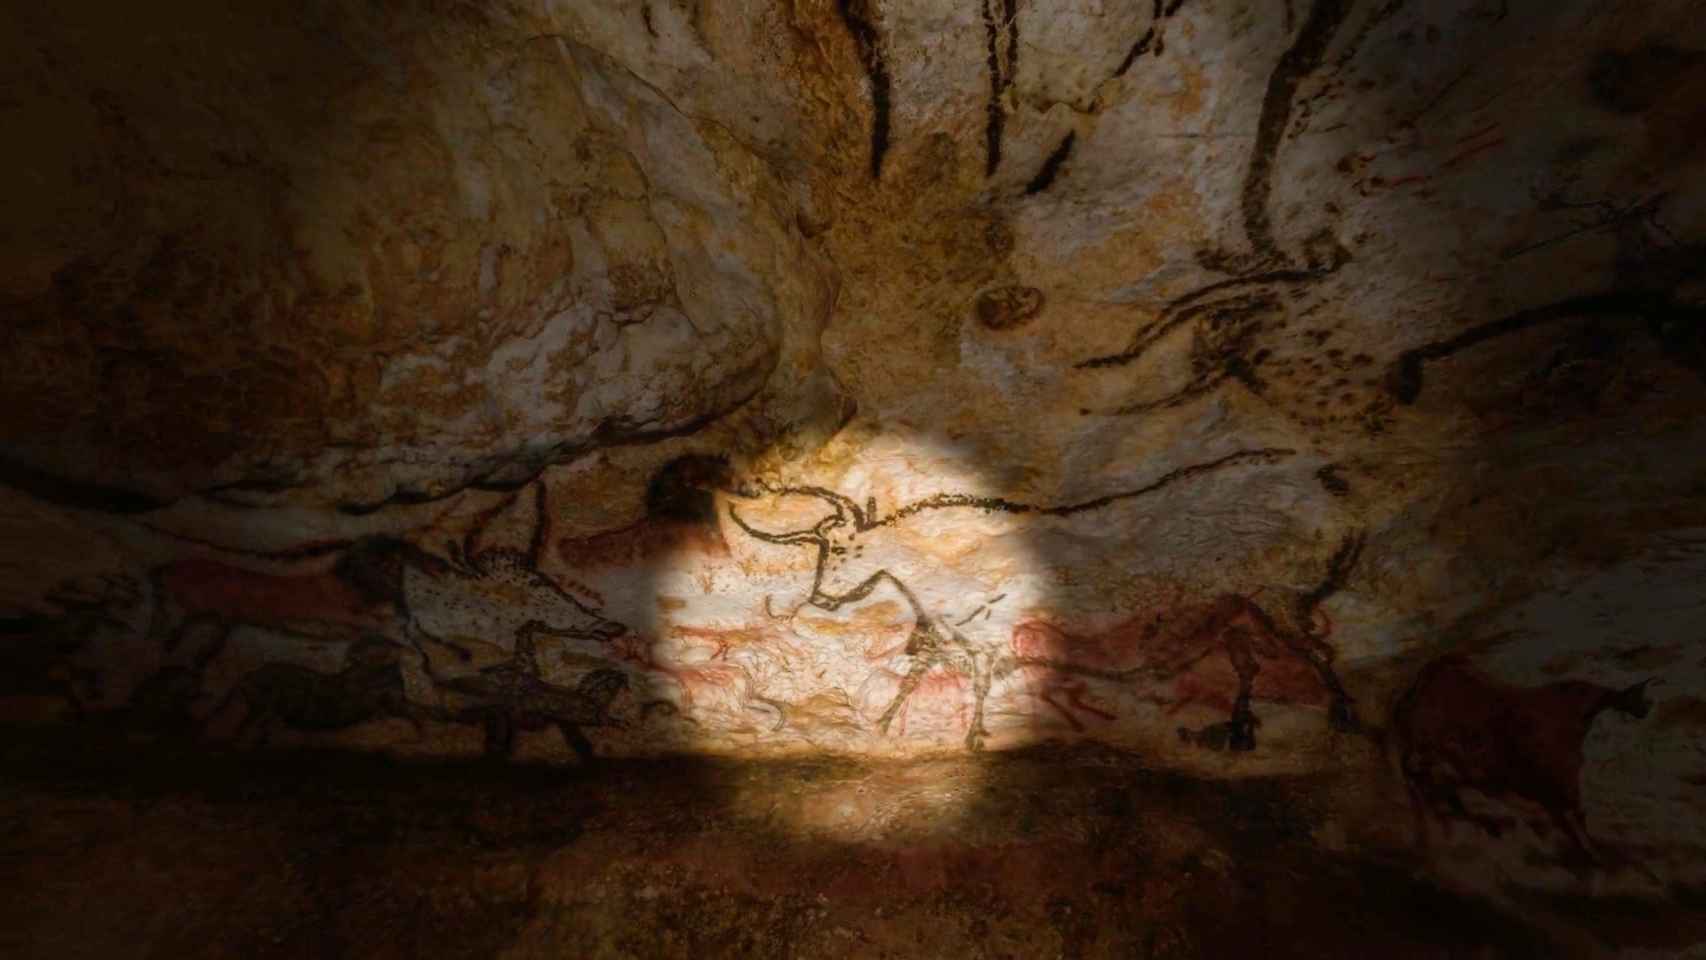 Una de las obras descubiertas en las cuevas de Lascaux y que ahora se replican en un gemelo digital.